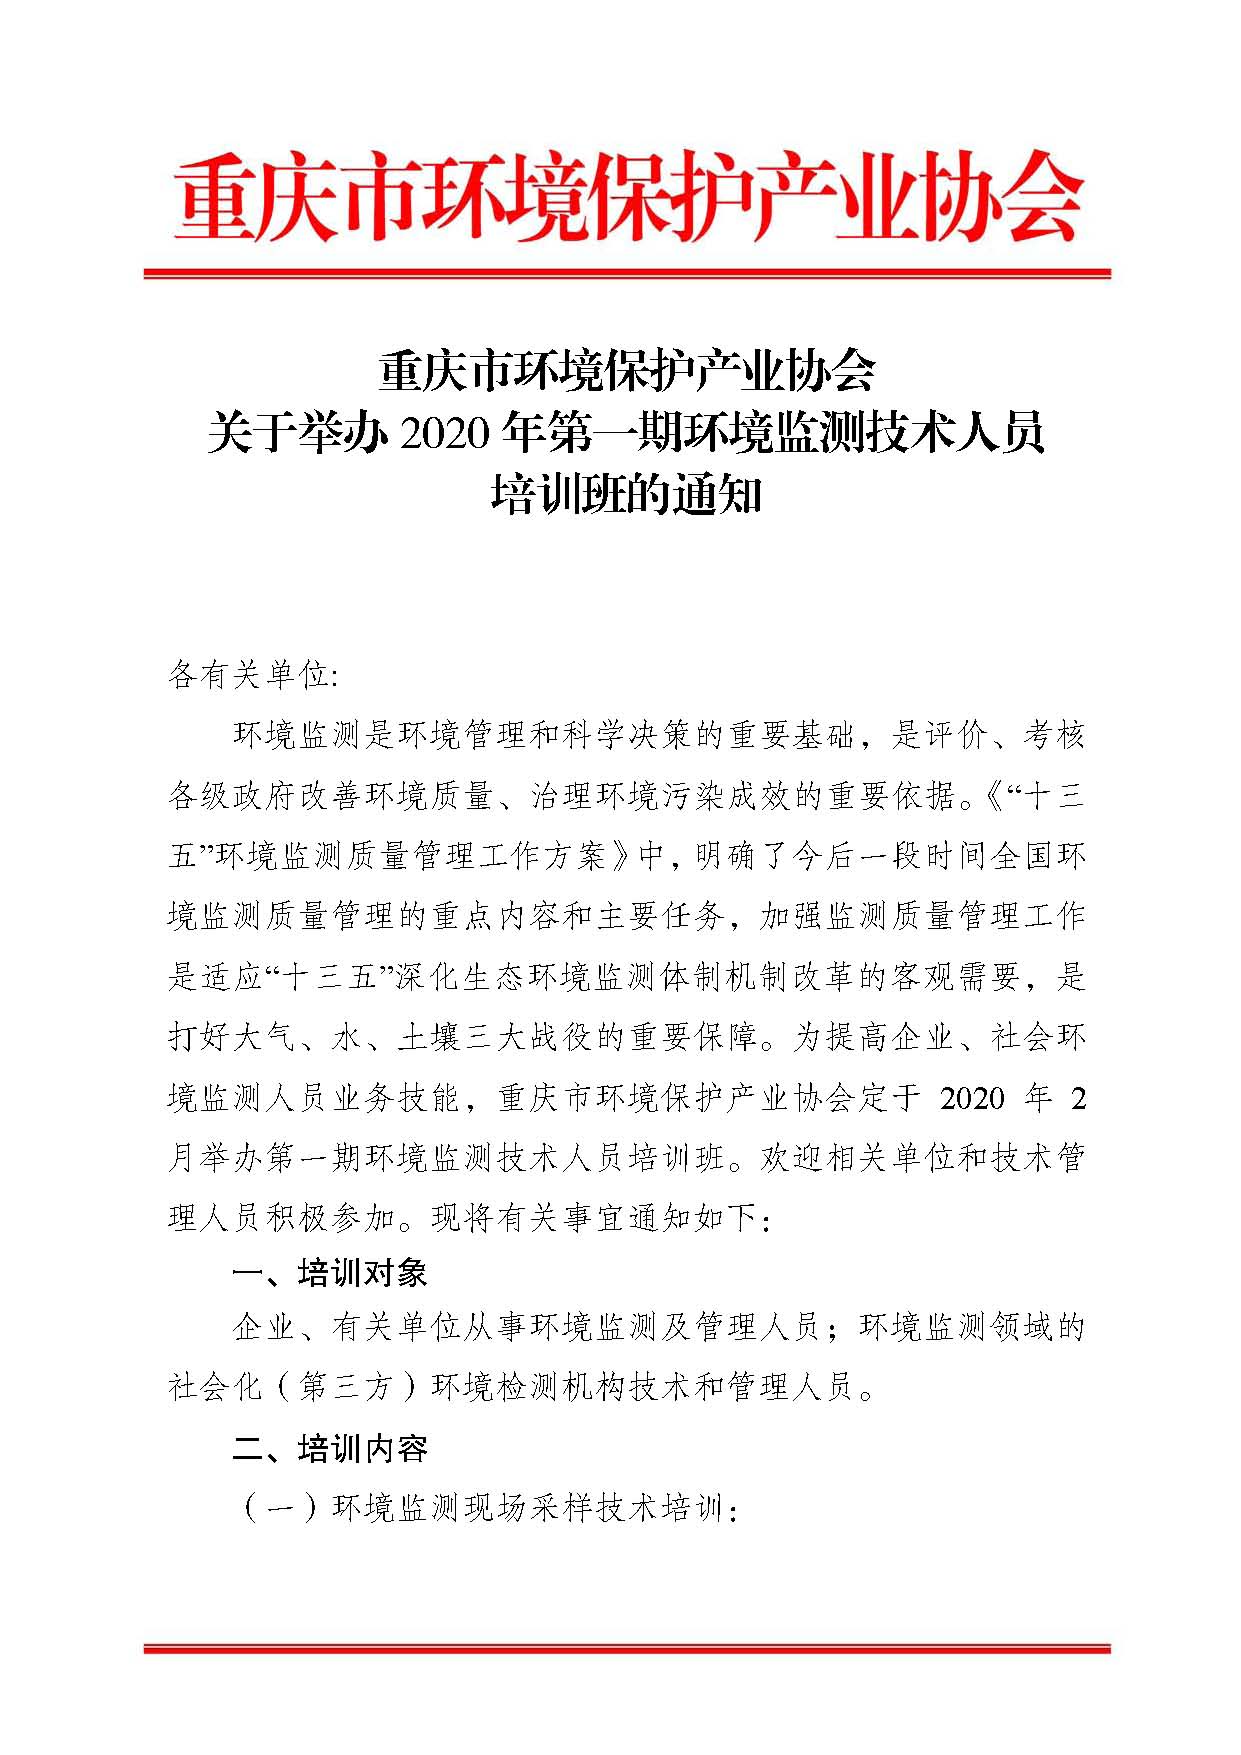 重庆市环境保护产业协会关于举办2020年第一期环境监测技术人员培训班的通知1_页面_1